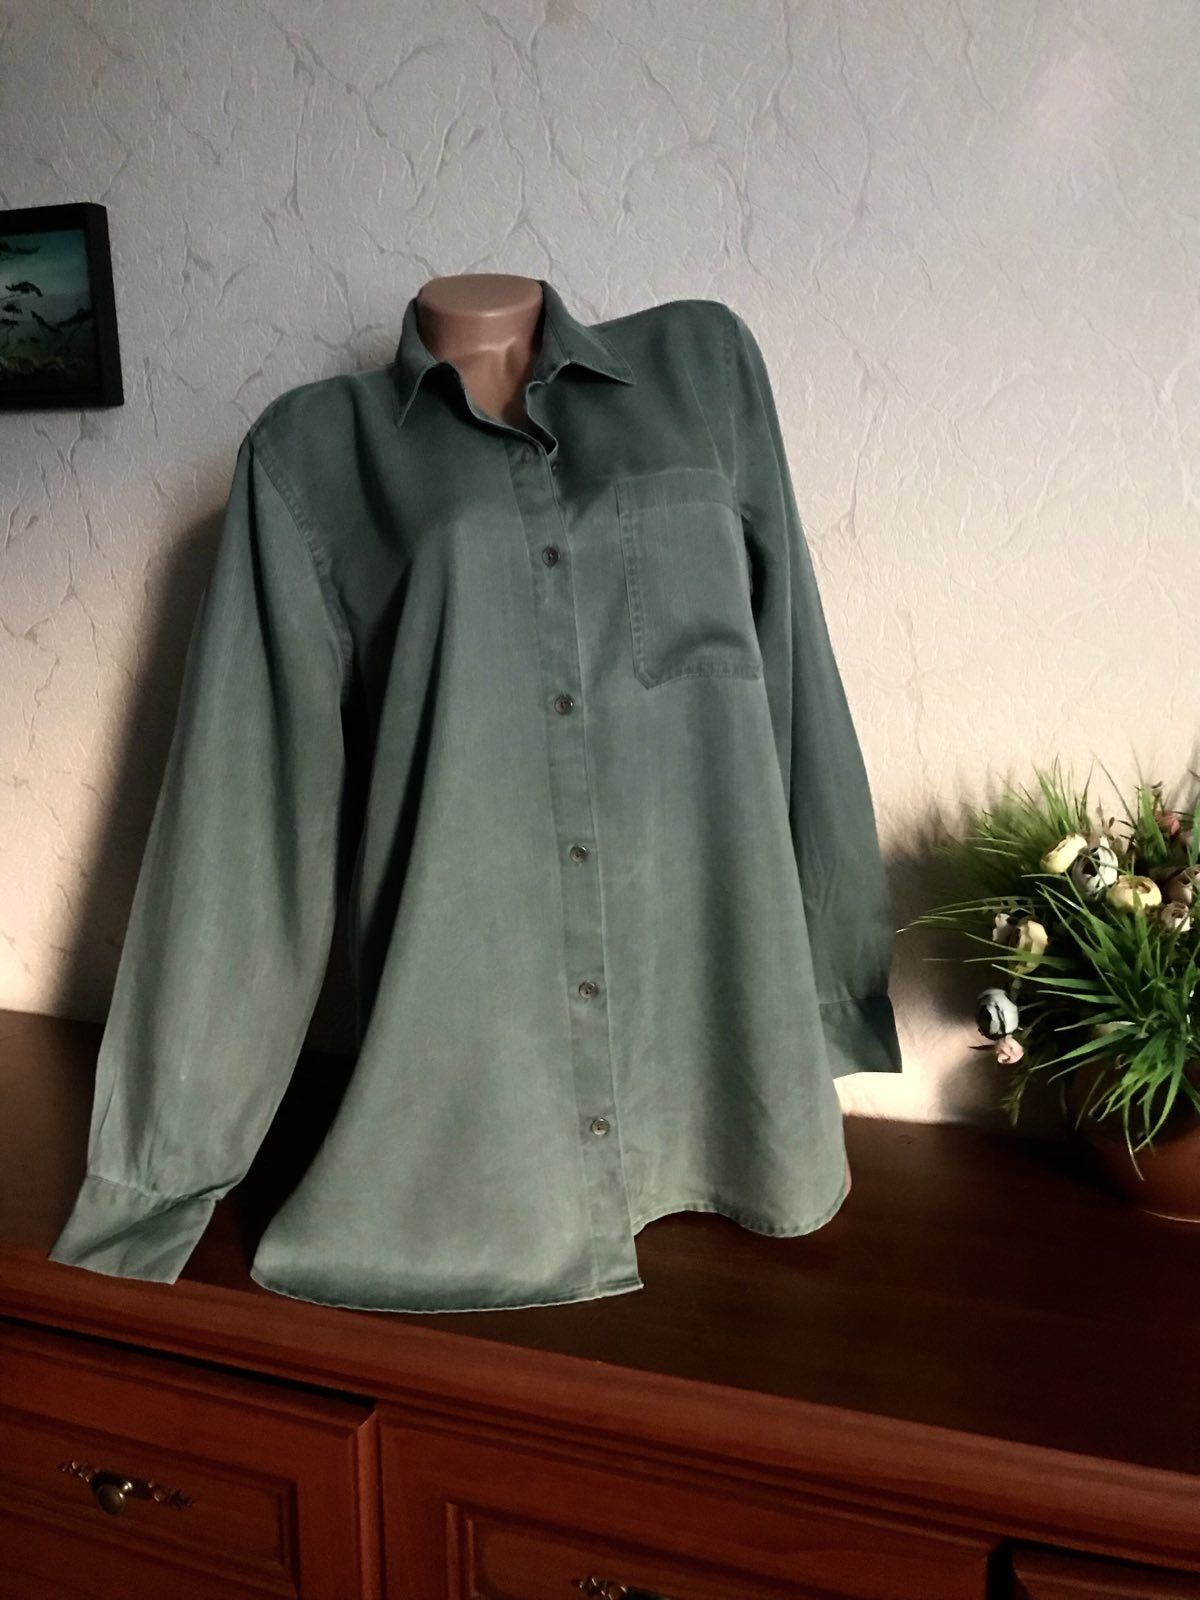 Рубашка стильная "коттон варенка" красивый цвет 48-52р